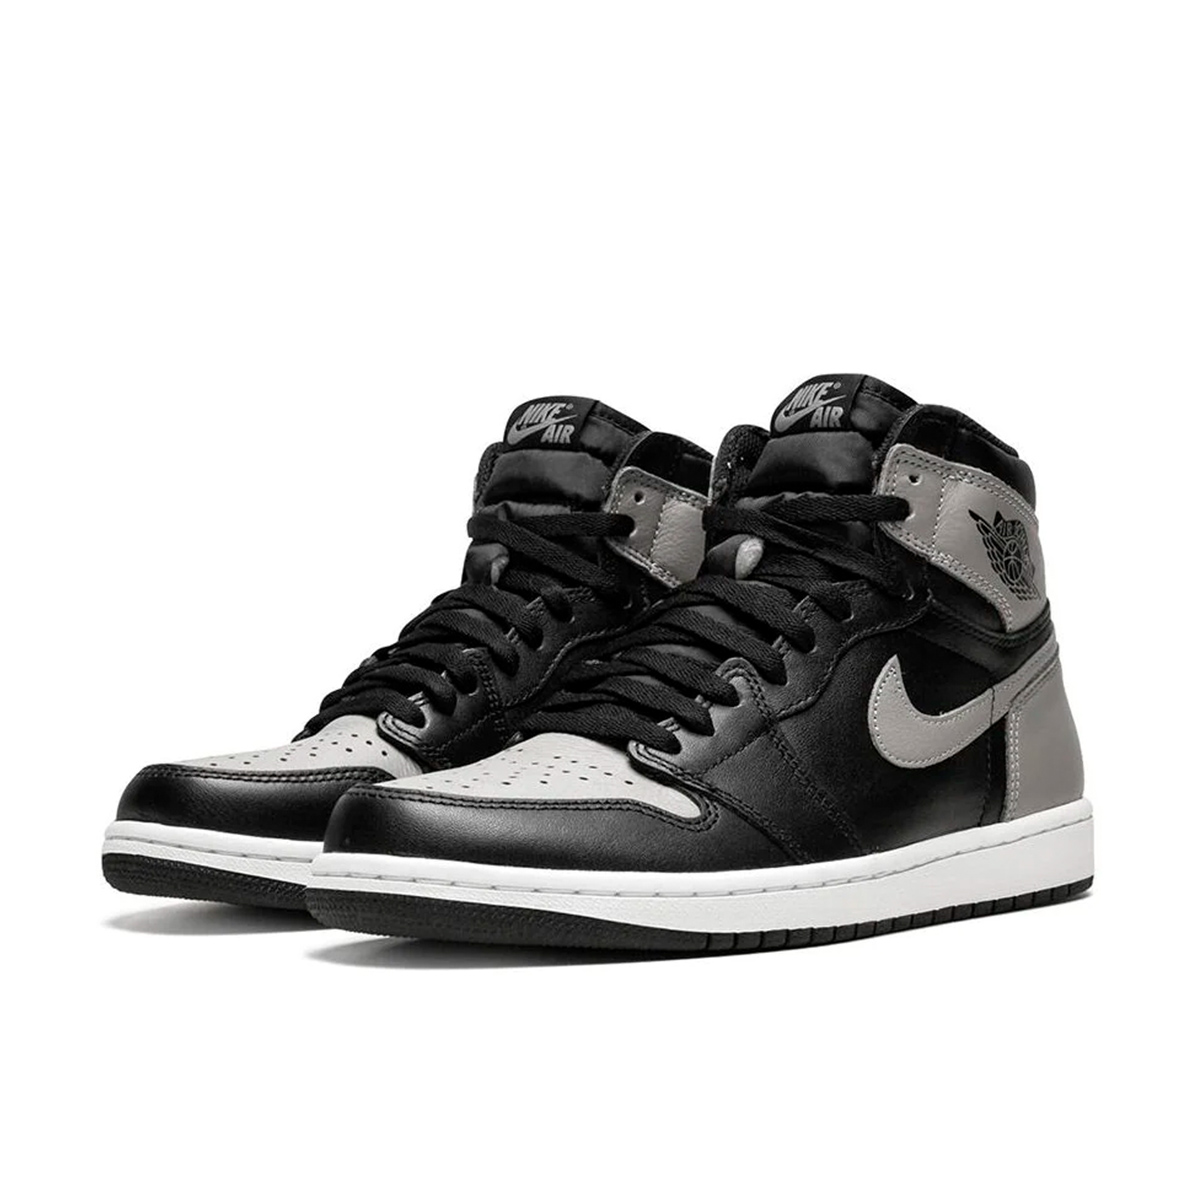 Джорданы 1 черные. Nike Air Jordan 1 Grey Black. Nike Air Jordan 1 Shadow Grey. Nike Air Jordan 1 High Shadow. Nike Air Jordan 1 Retro White Black.